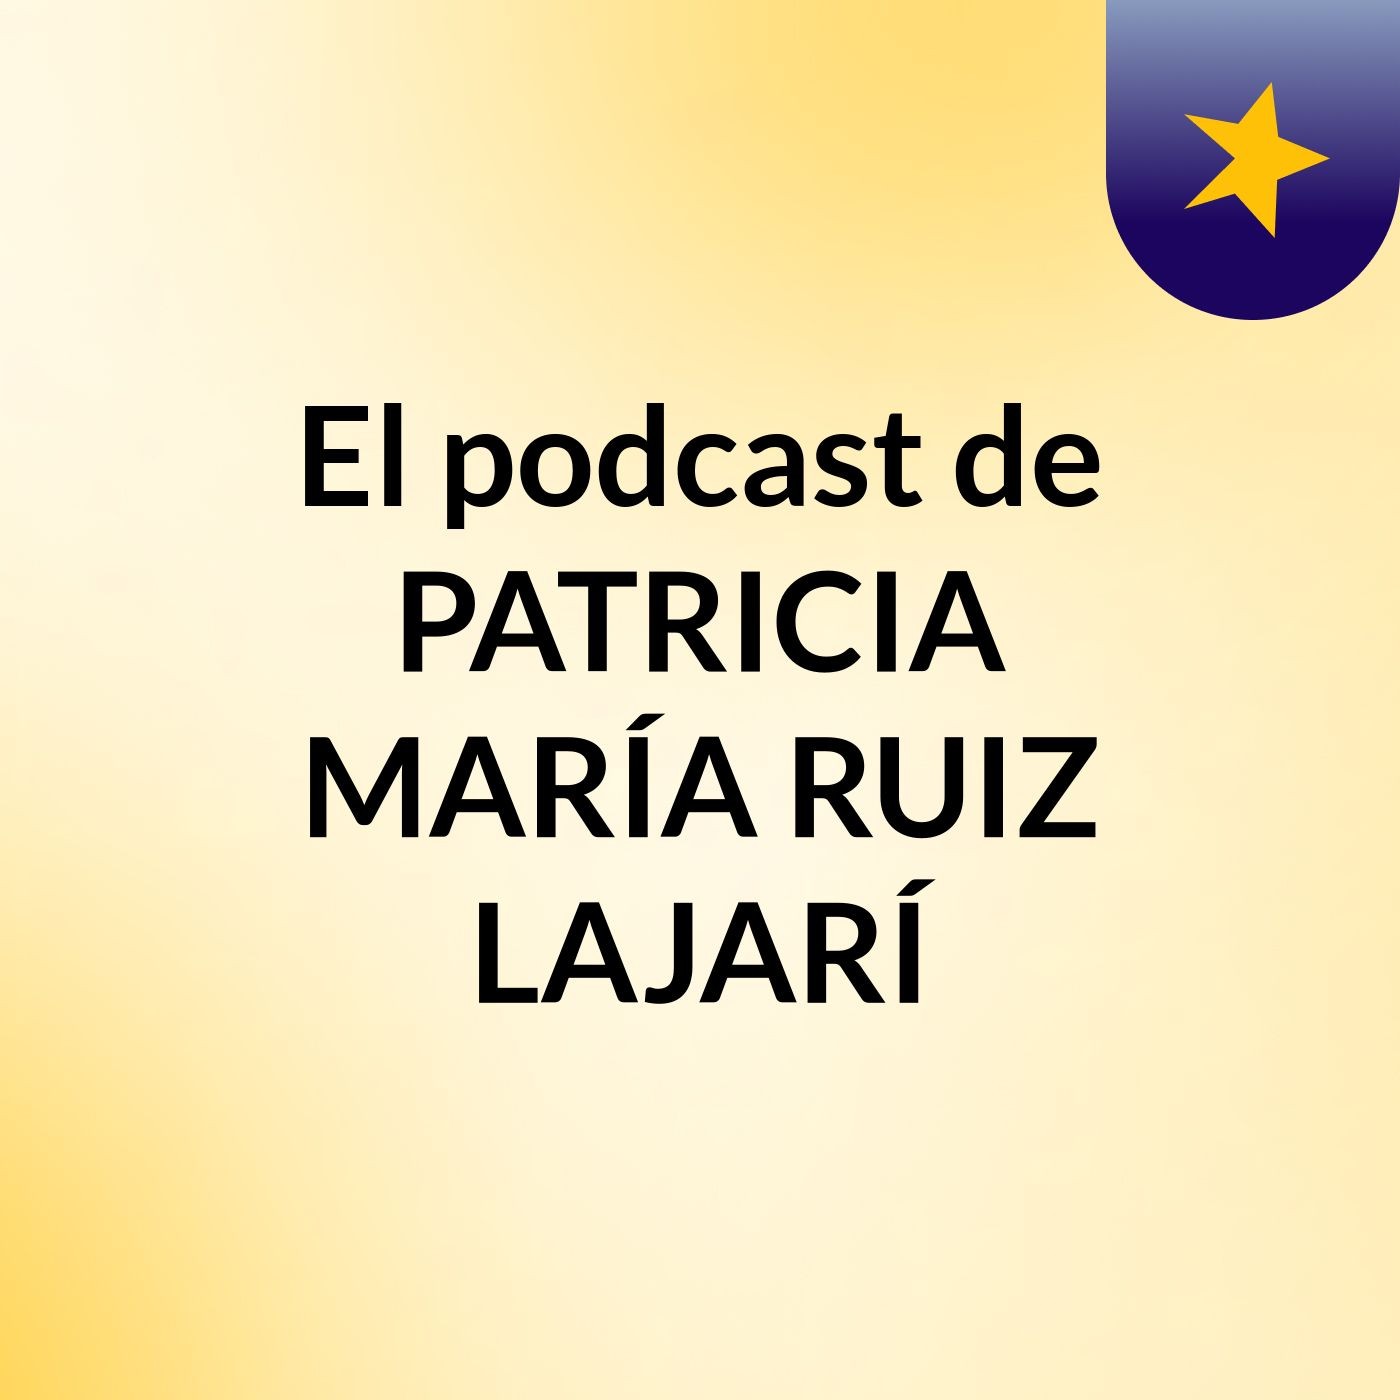 El podcast de PATRICIA MARÍA RUIZ LAJARÍ